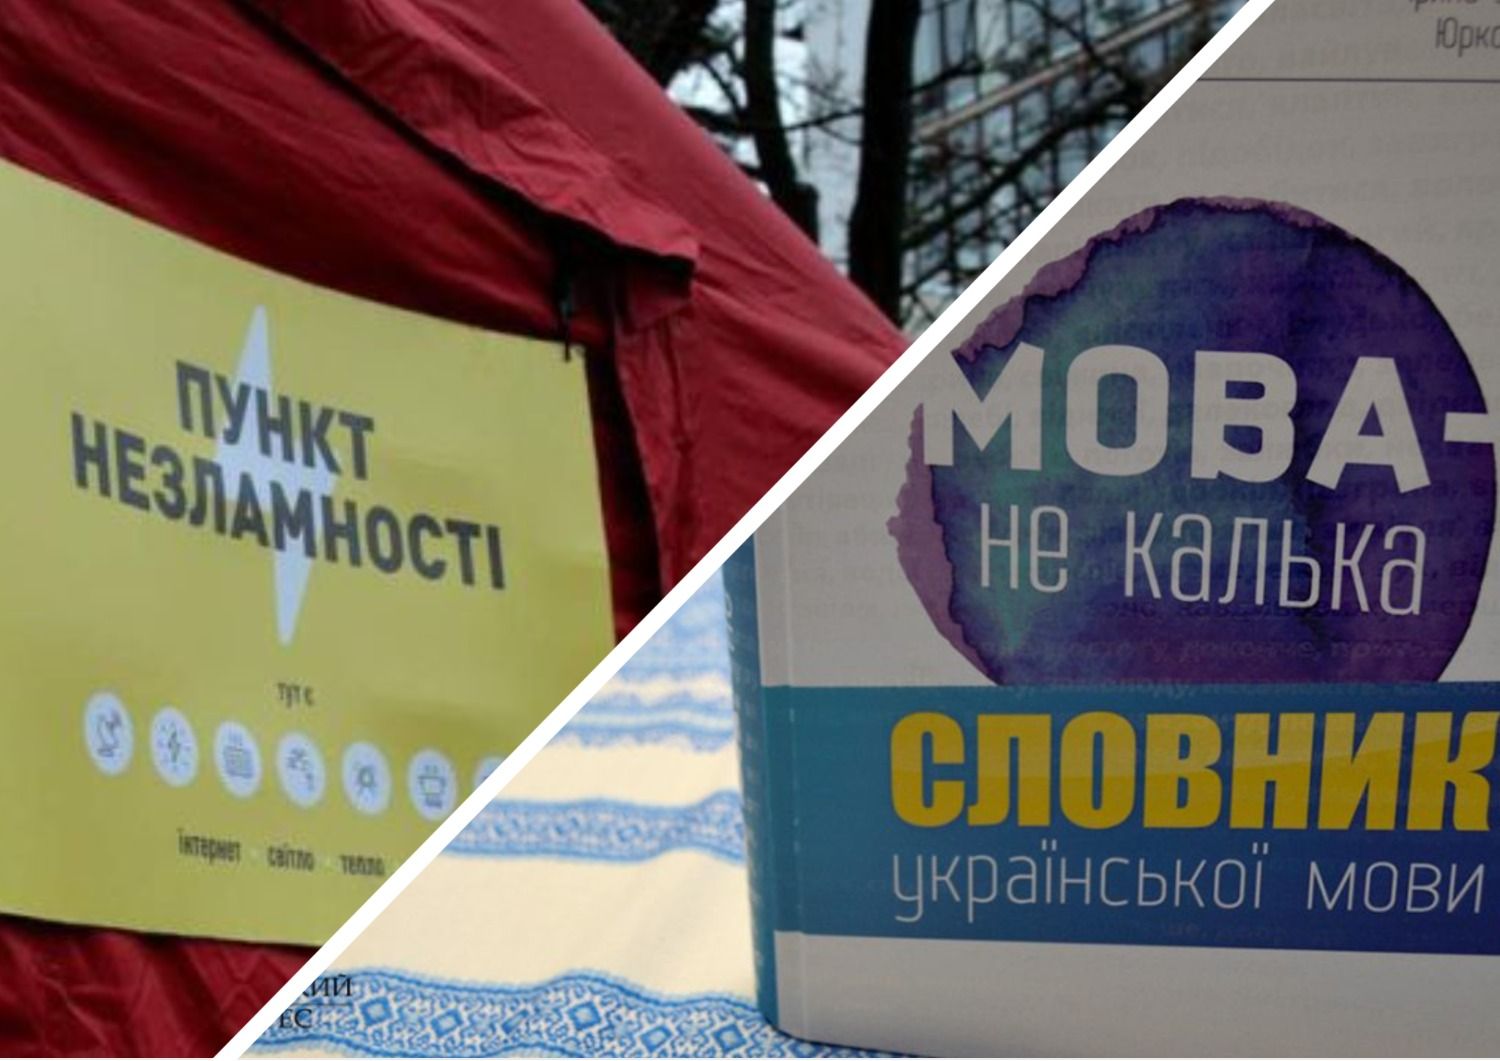 Антисуржик - як правильно говорити українською про тепло і Пункти незламності - 24 канал - Освіта